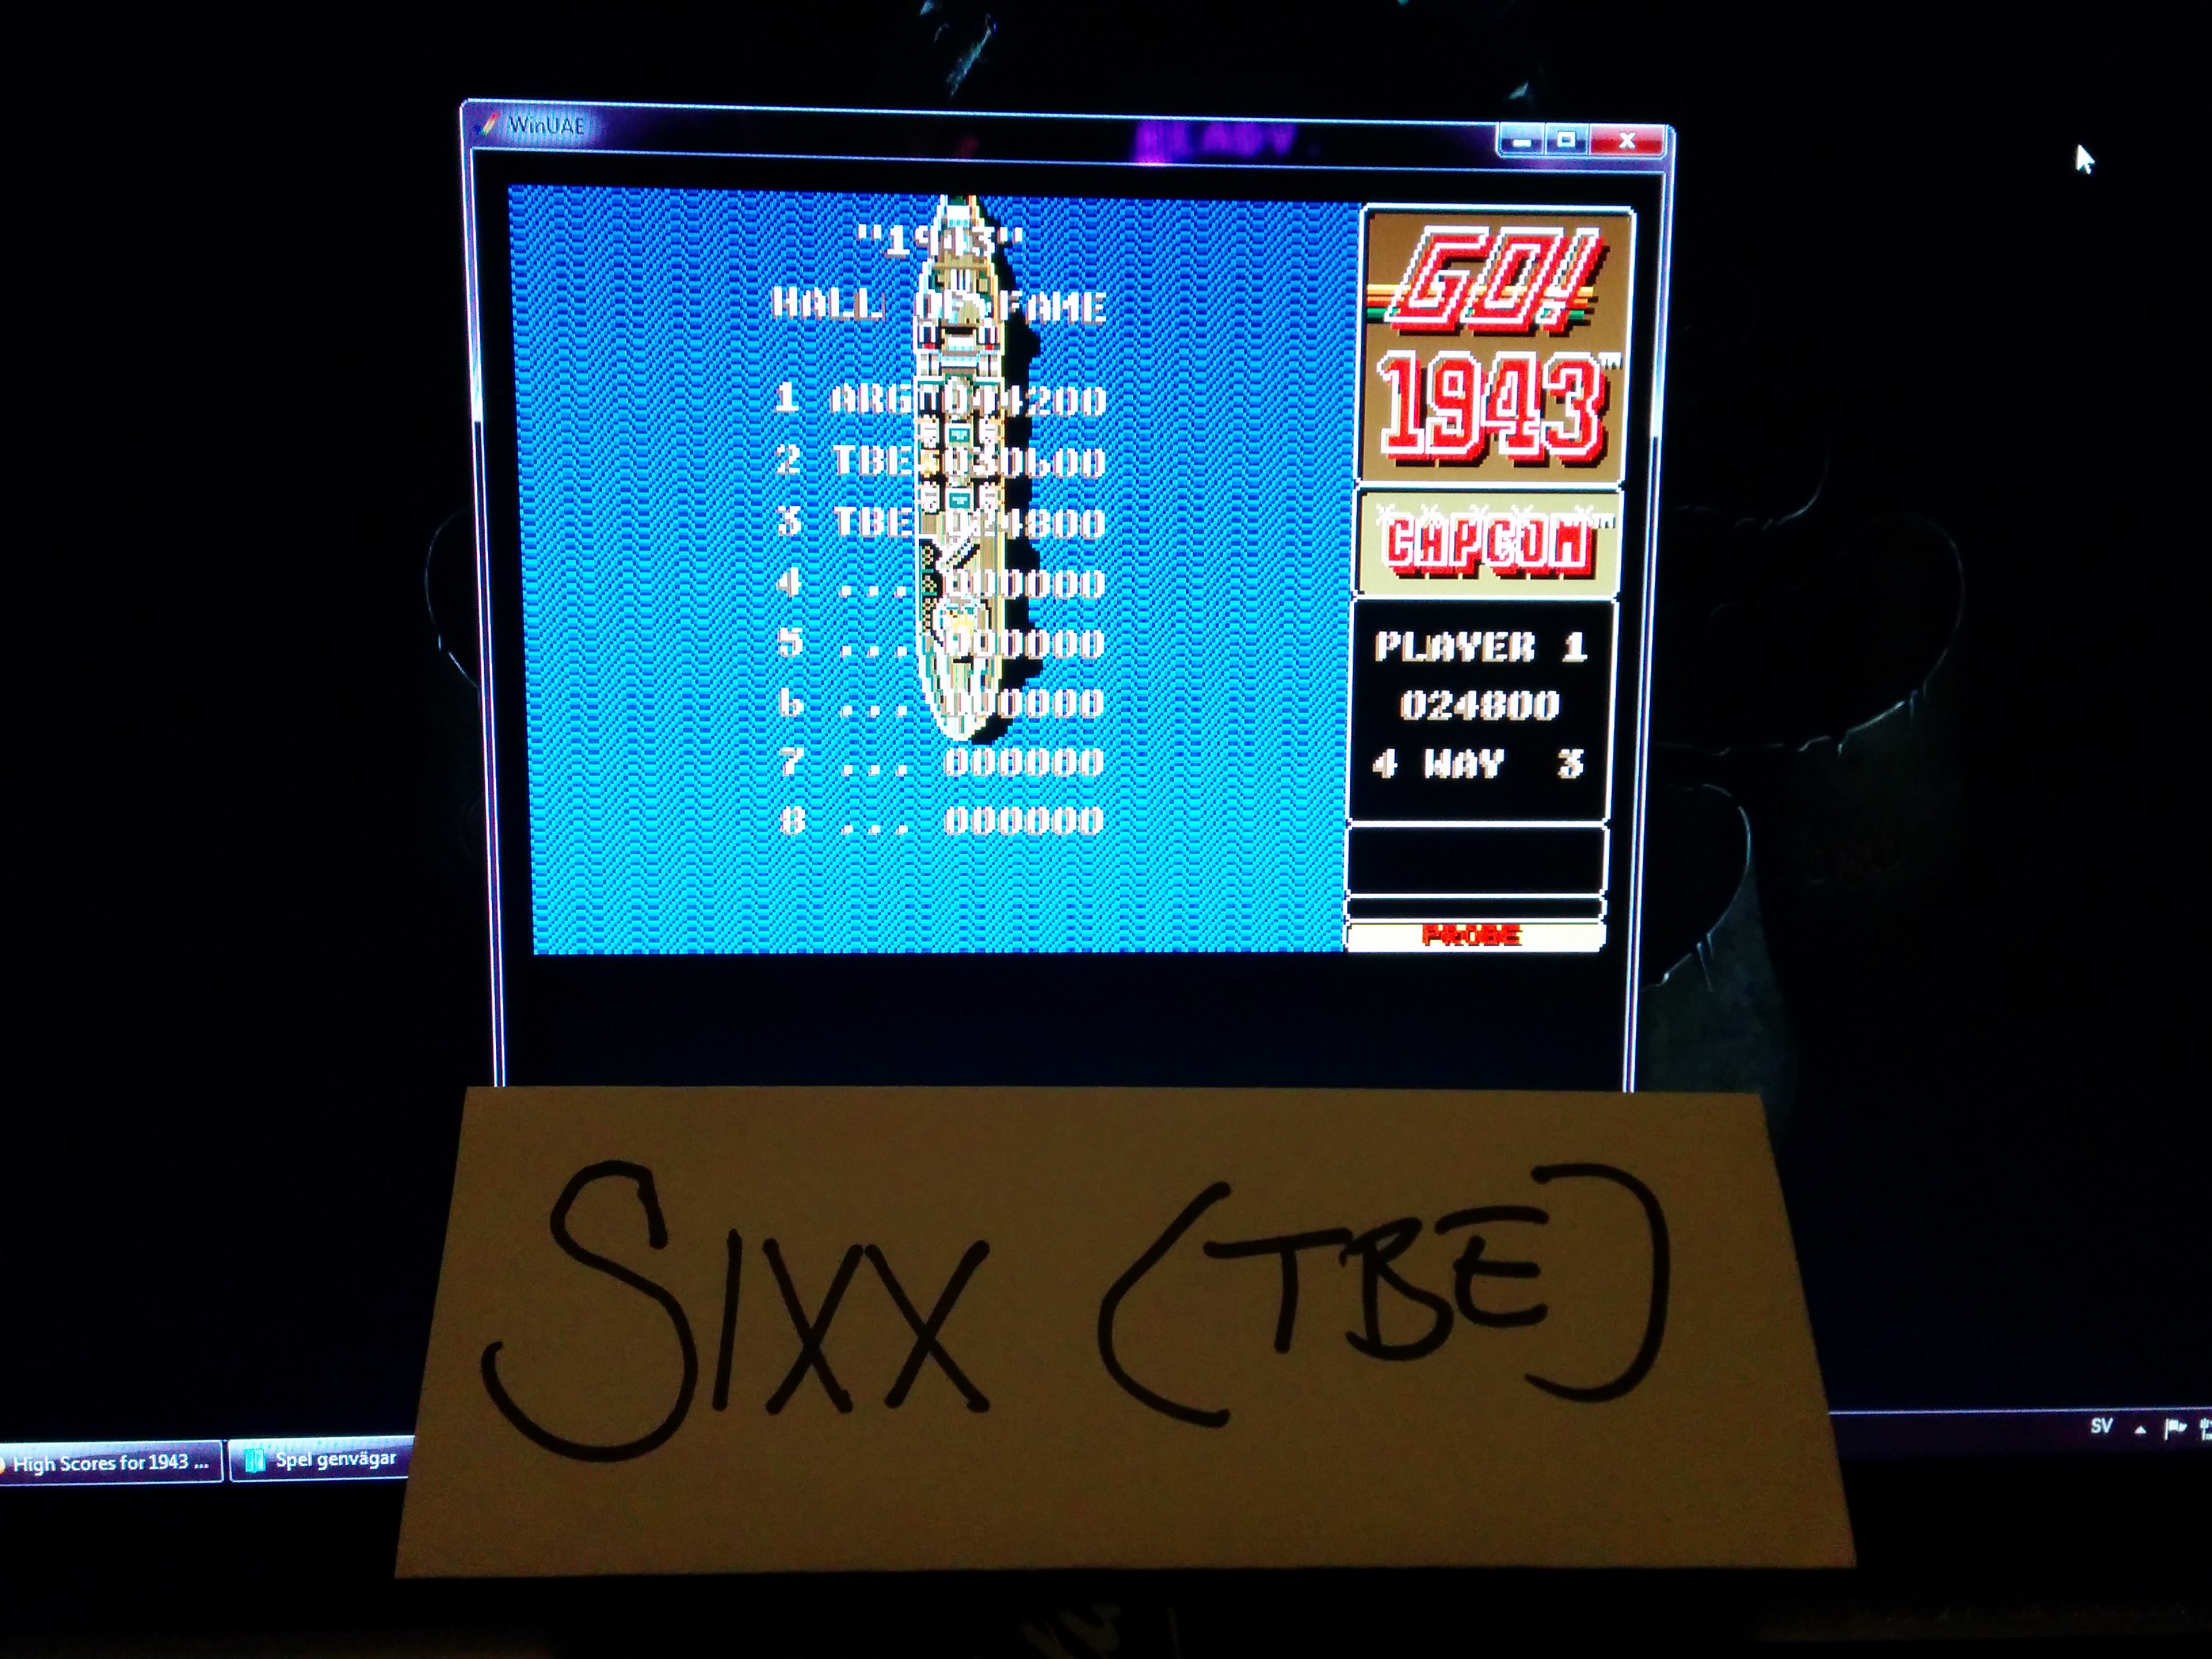 Sixx: 1943 (Amiga Emulated) 30,600 points on 2014-03-19 18:10:28